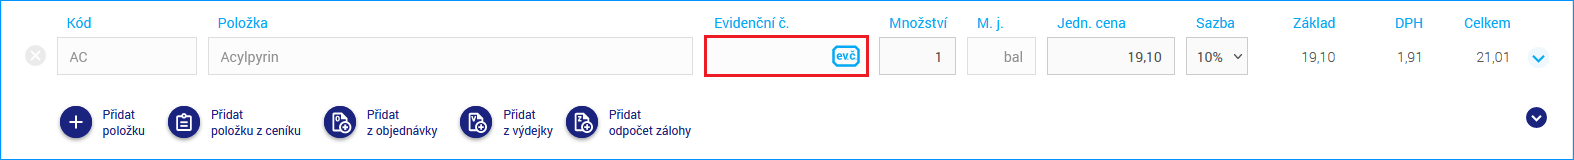 Evidenční číslo můžete na doklad vložit i dodatečně kliknutím na ikonu v poli Evidenční č.